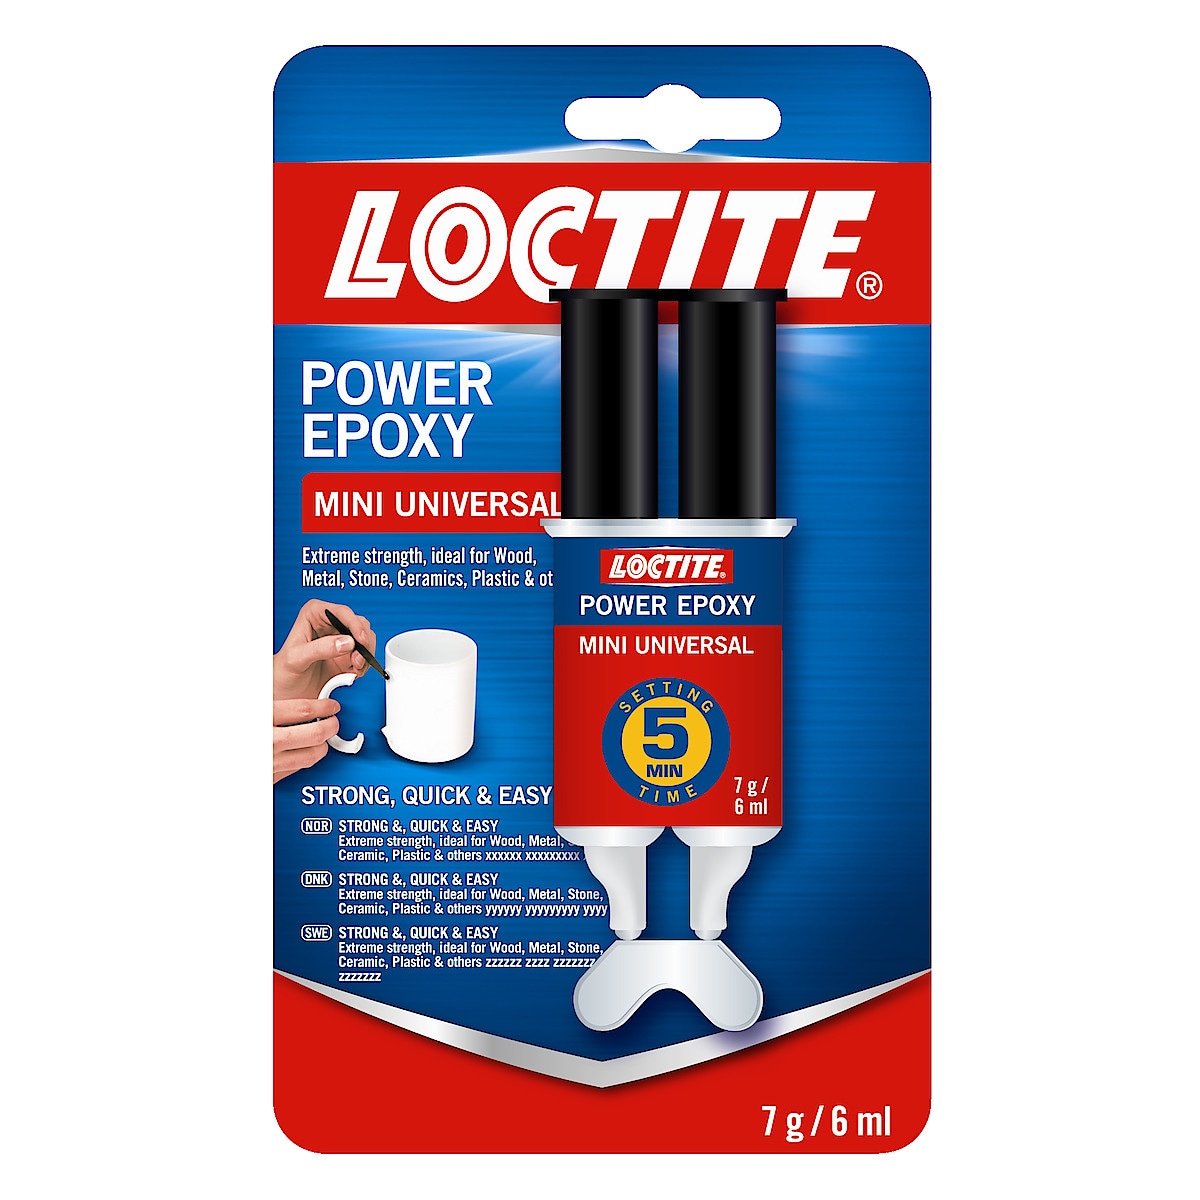 Power Epoxy Loctite